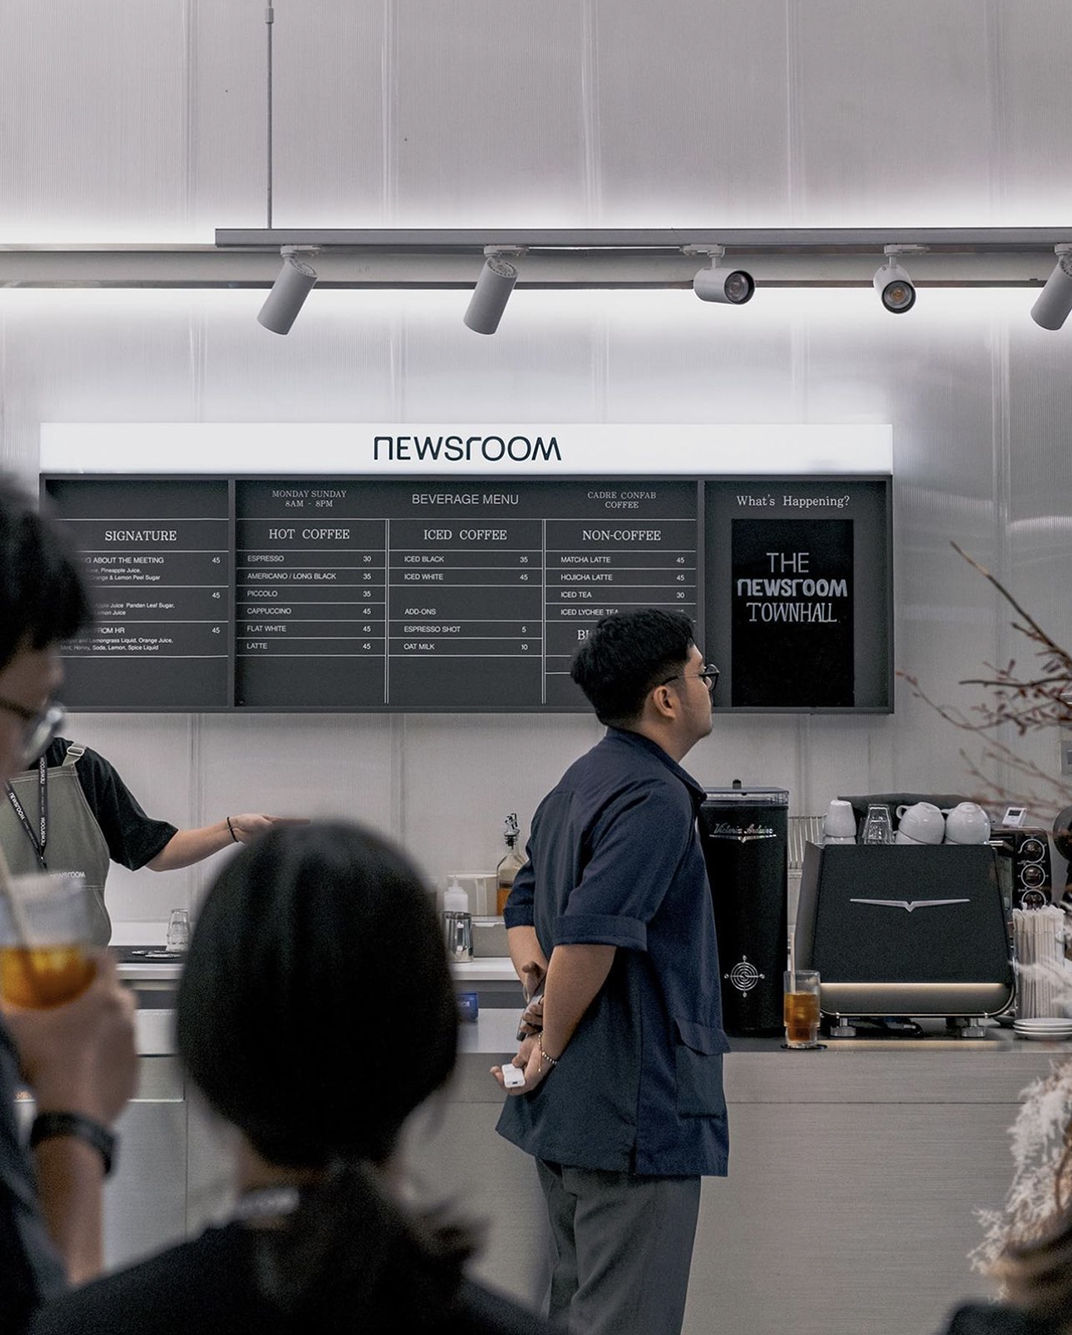 新闻编辑室咖啡馆The Newsroom 印度尼西亚 深圳 上海 北京 广州 武汉 咖啡店 餐饮商业 logo设计 vi设计 空间设计